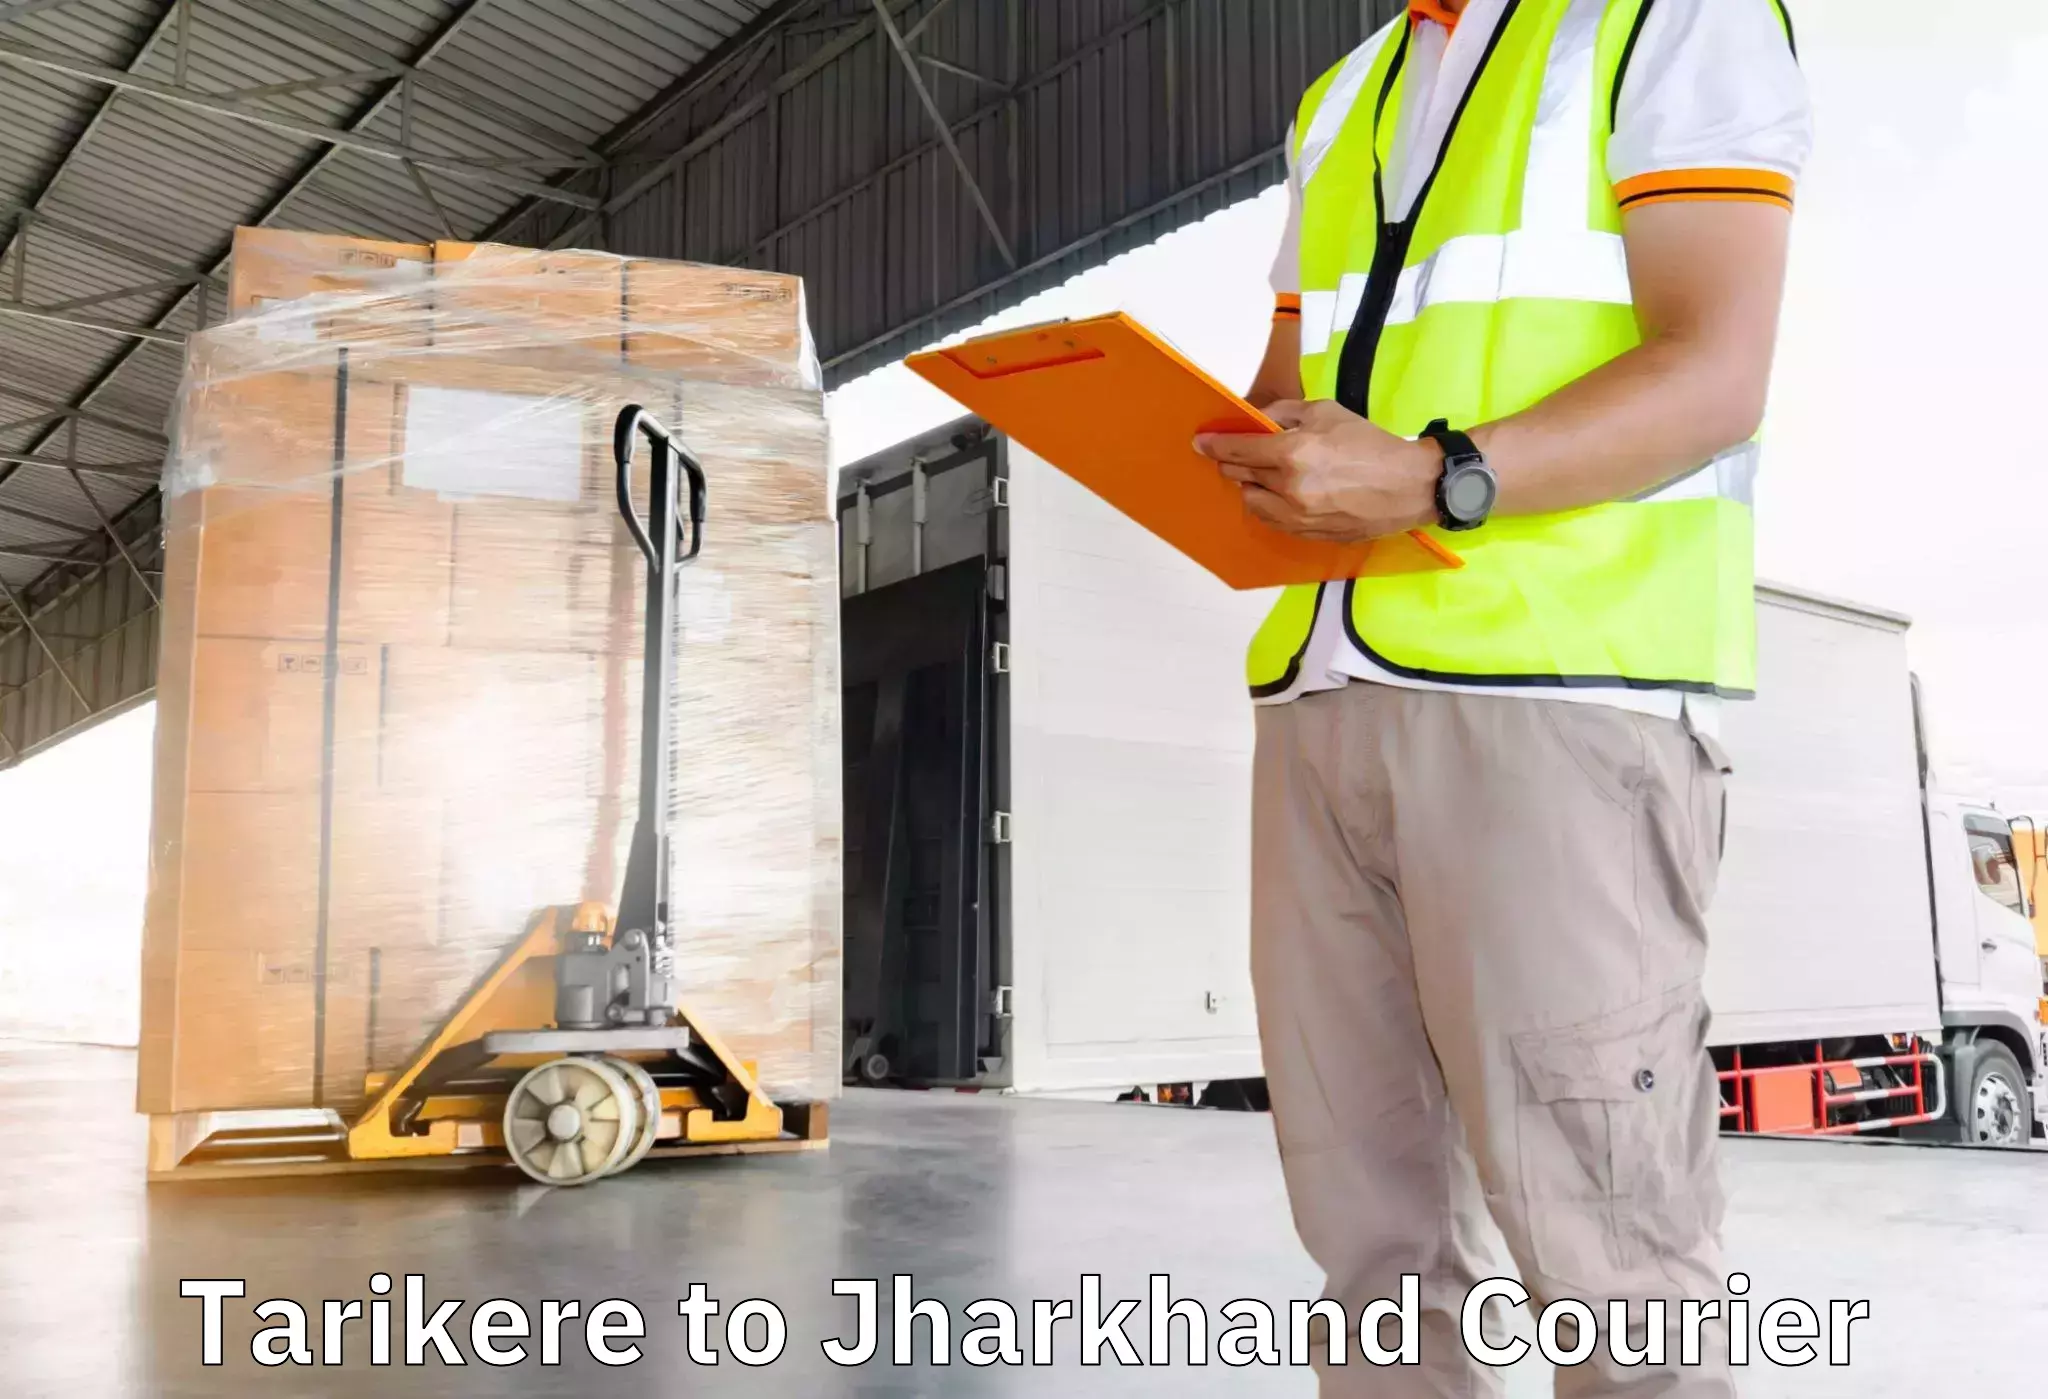 Furniture transport company Tarikere to Kedla